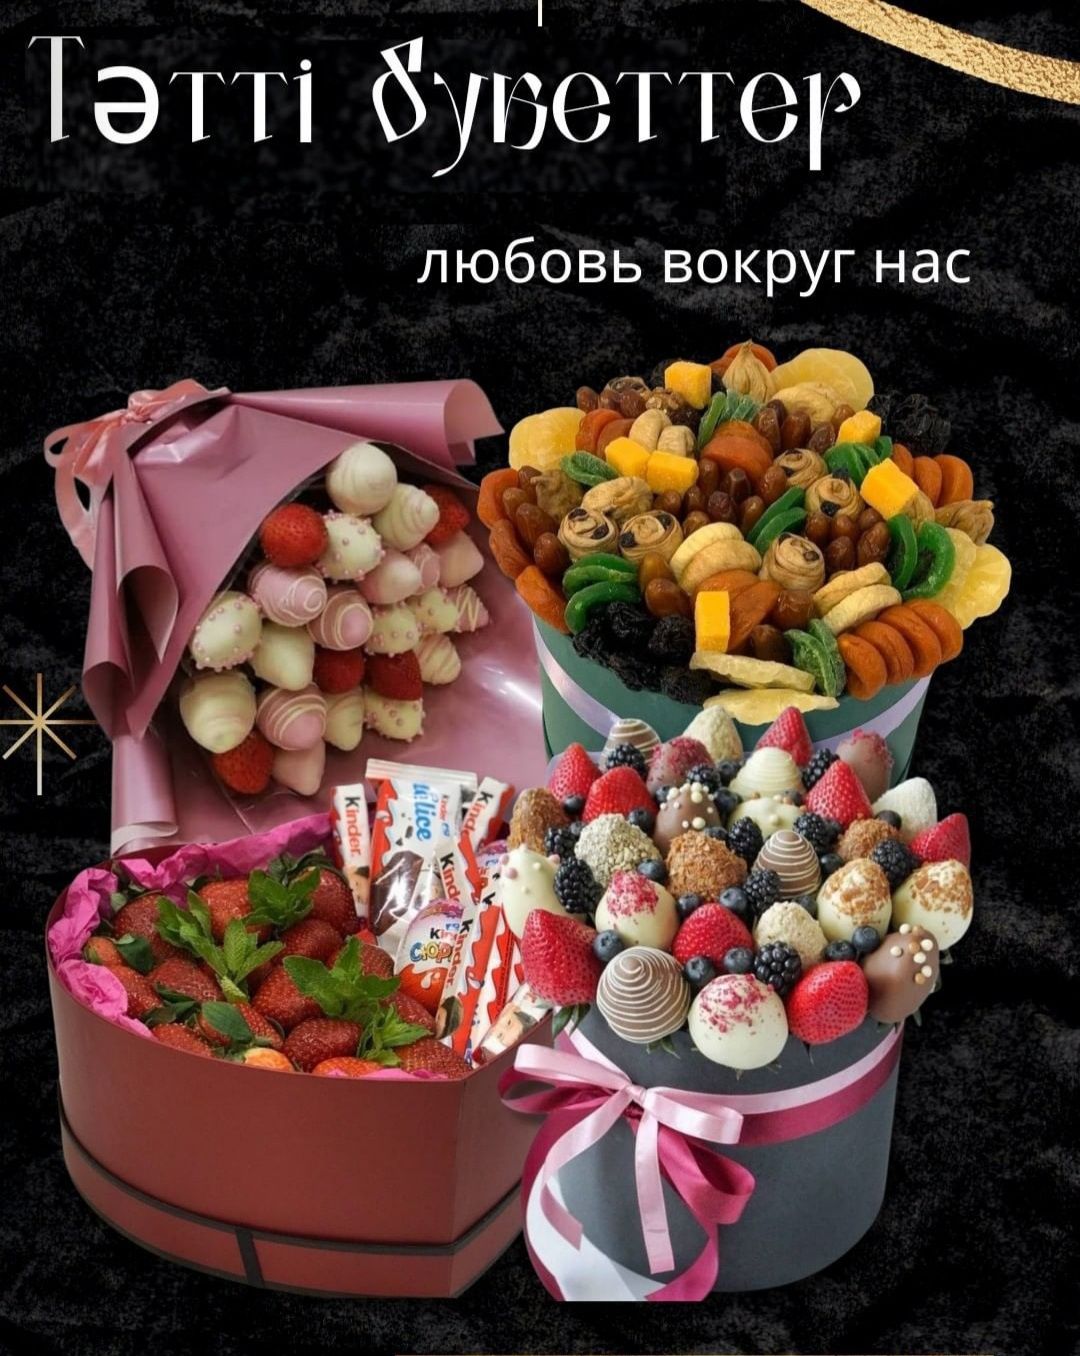 Букет шоколад сладкий букет цветов сердечко подарки разные цветы гүл